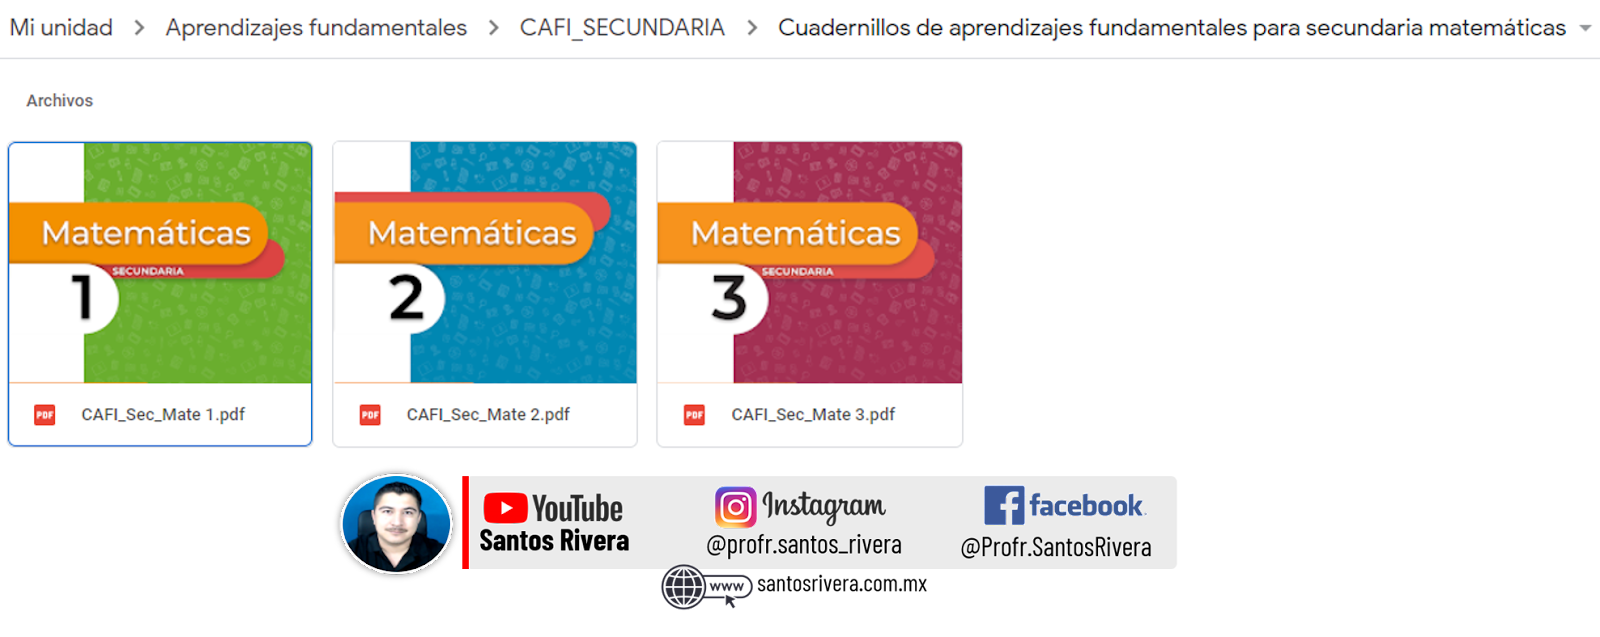 Cuadernos de Aprendizajes Fundamentales para primaria en Matemáticas